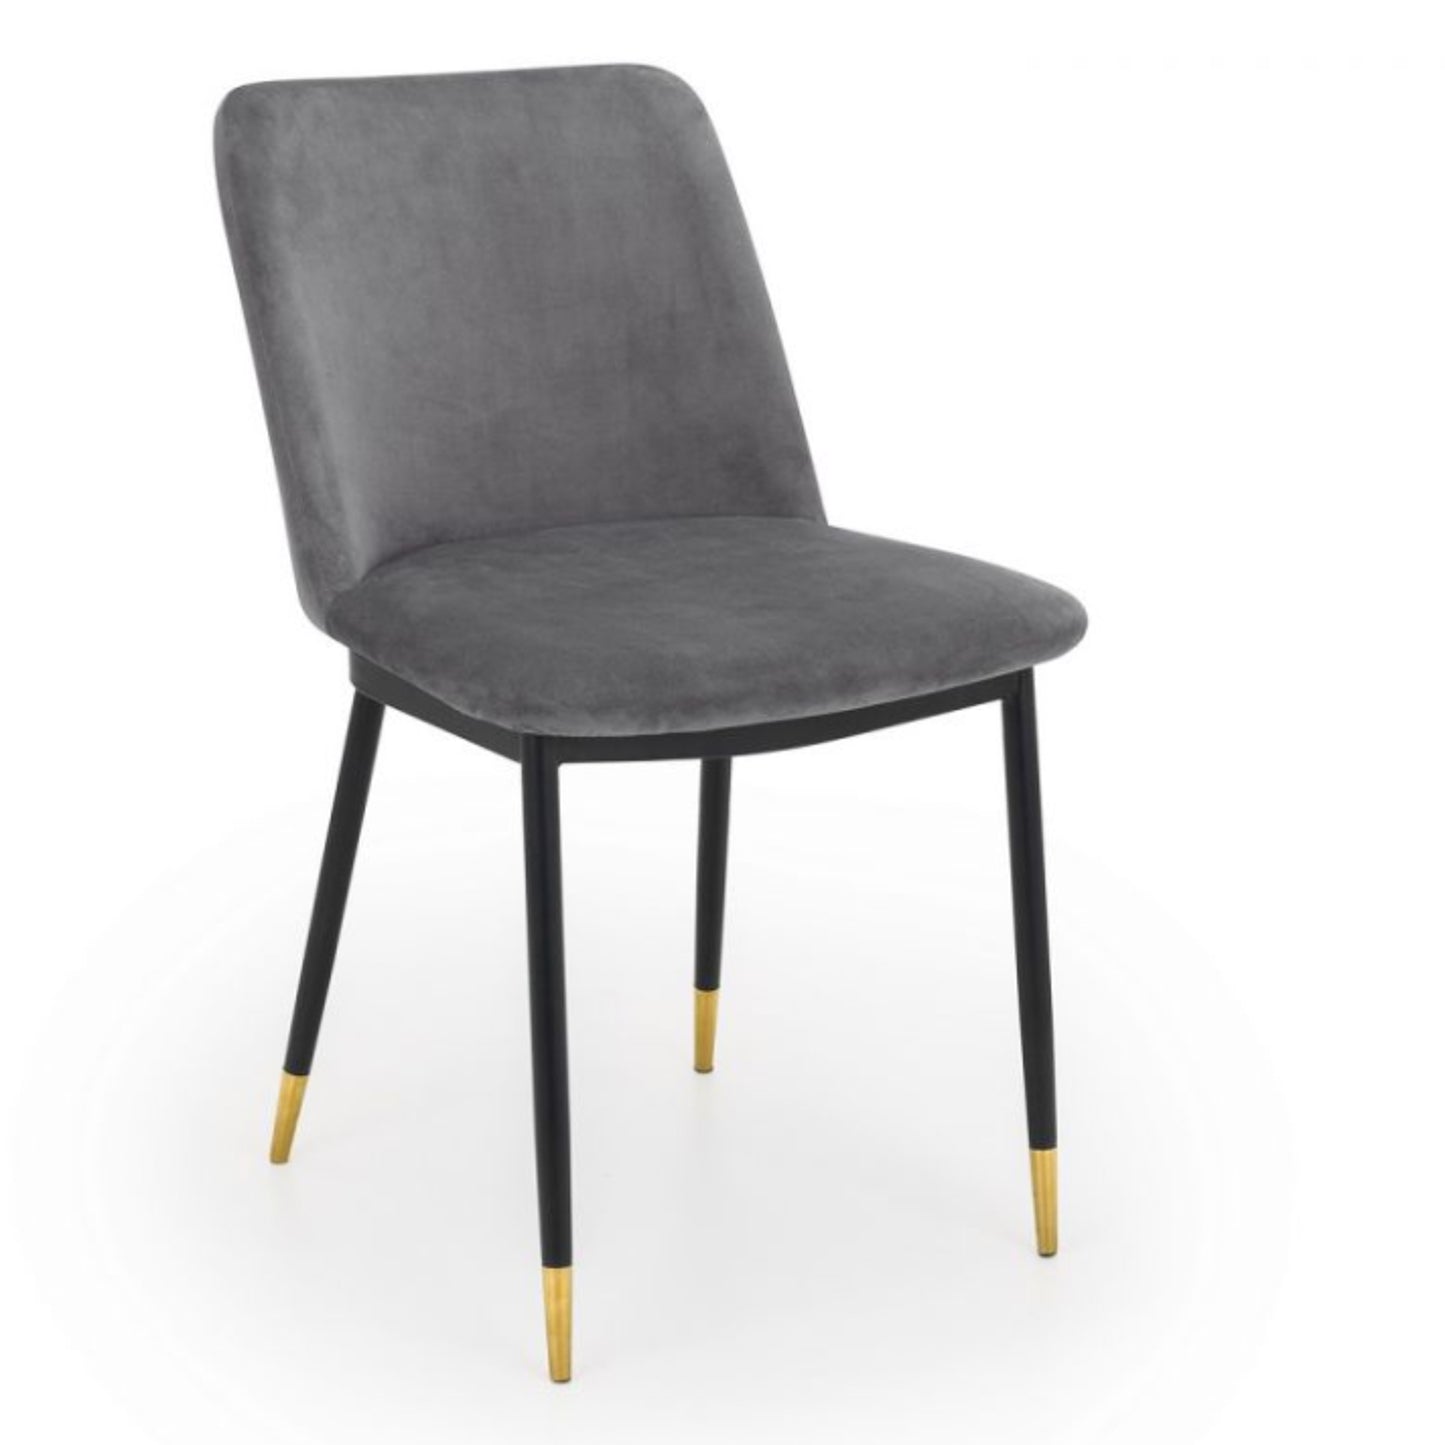 2 Pack Delaunay Dining Chair - Grey Velvet